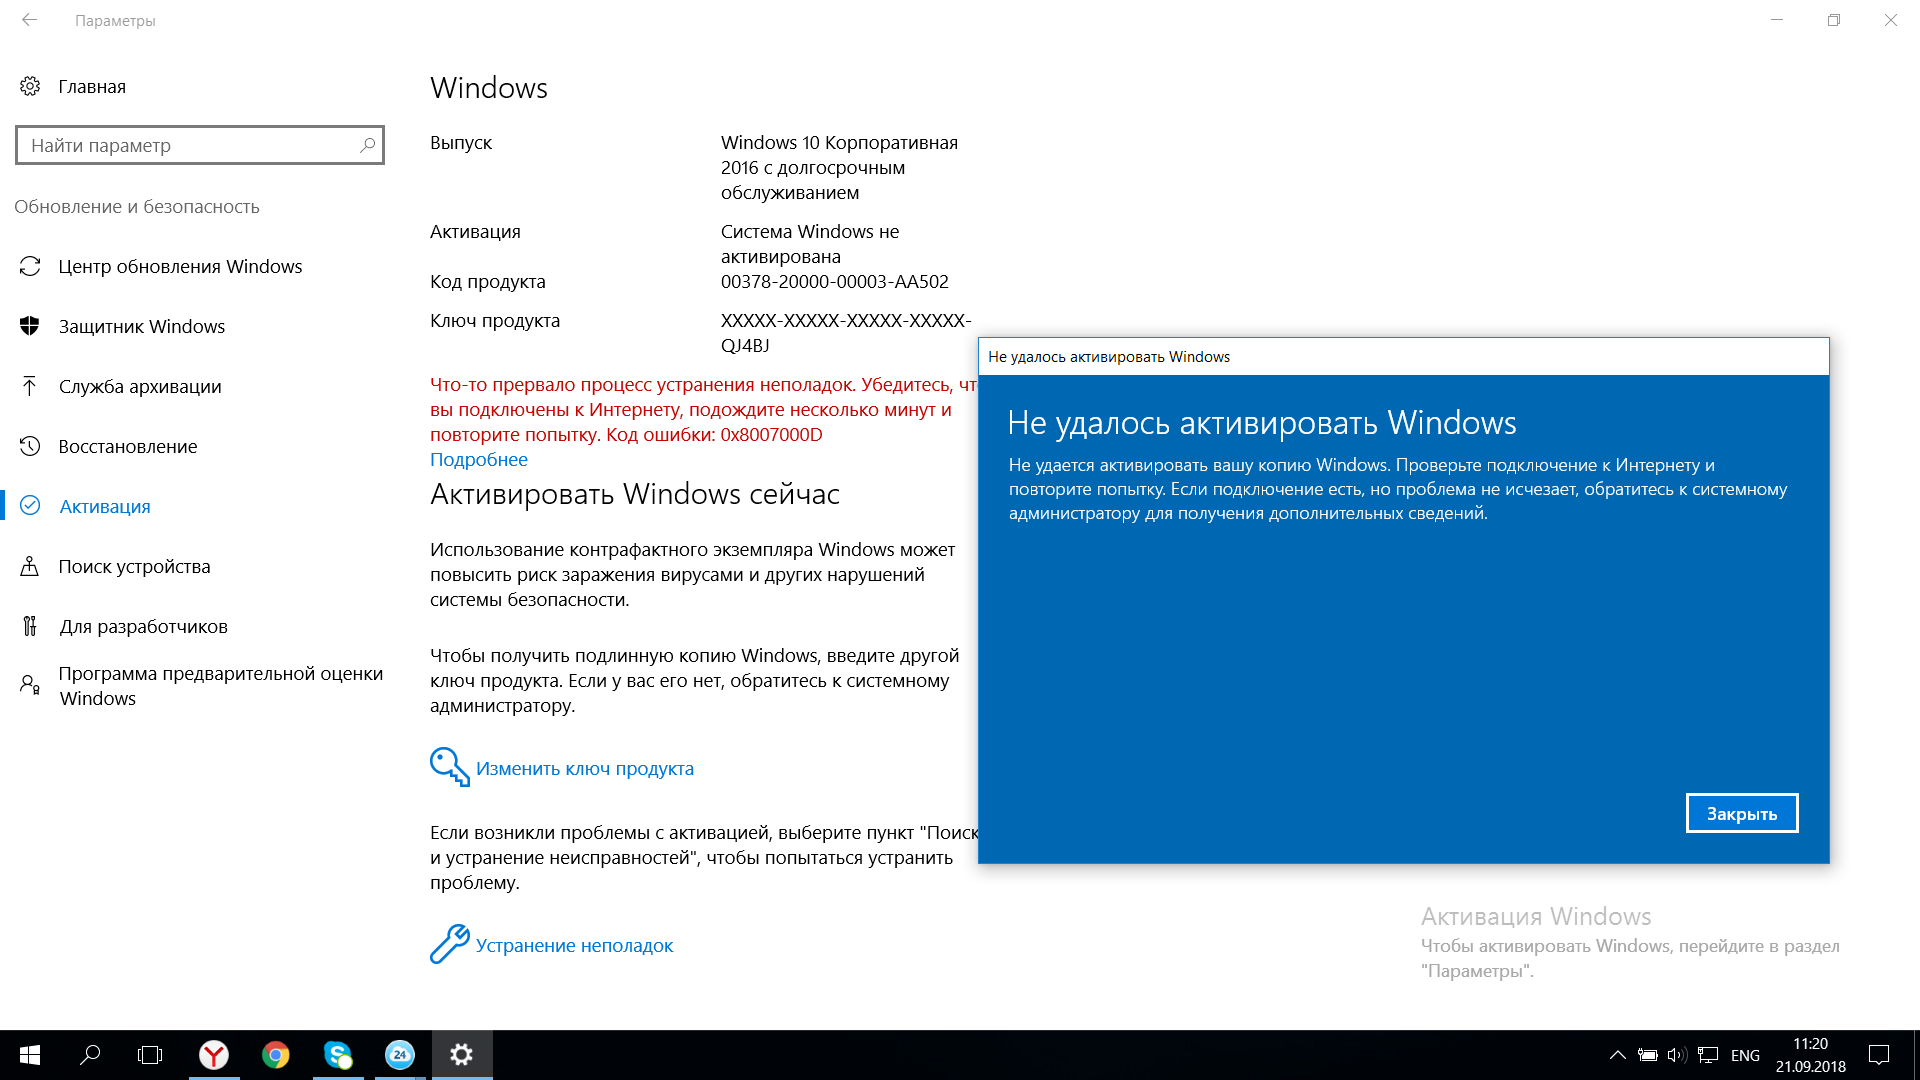 Необходимо активировать windows в параметрах компьютера. Ошибка при активации виндовс 10. Активировать Windows. Код ошибки 0x8007000d при активации виндовс. Служба активации виндовс.